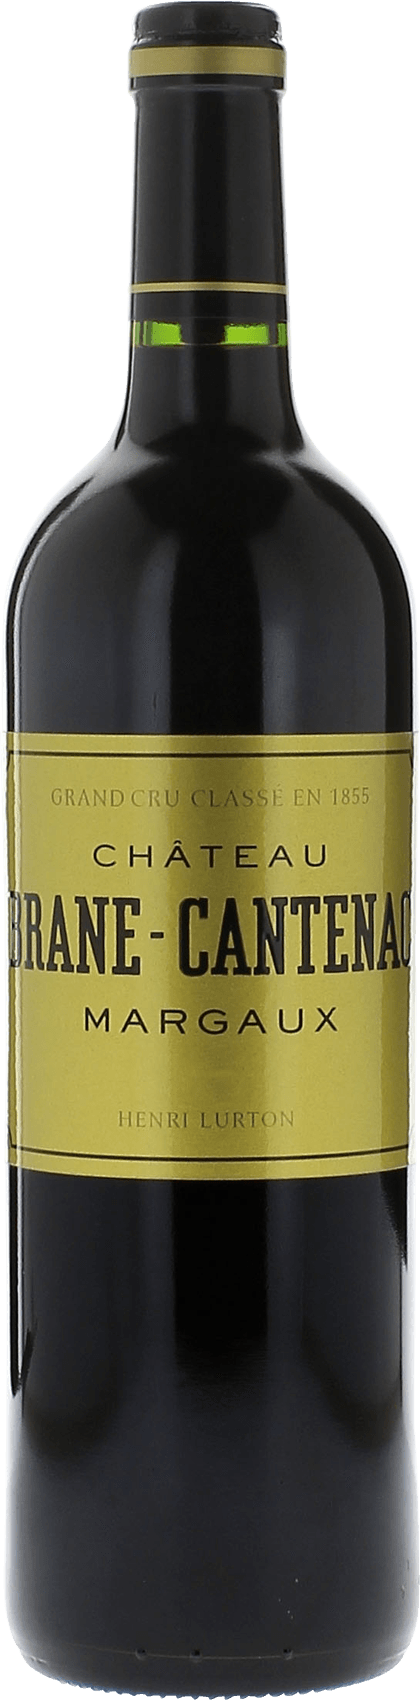 Brane cantenac 2000 2me Grand cru class Margaux, Bordeaux rouge